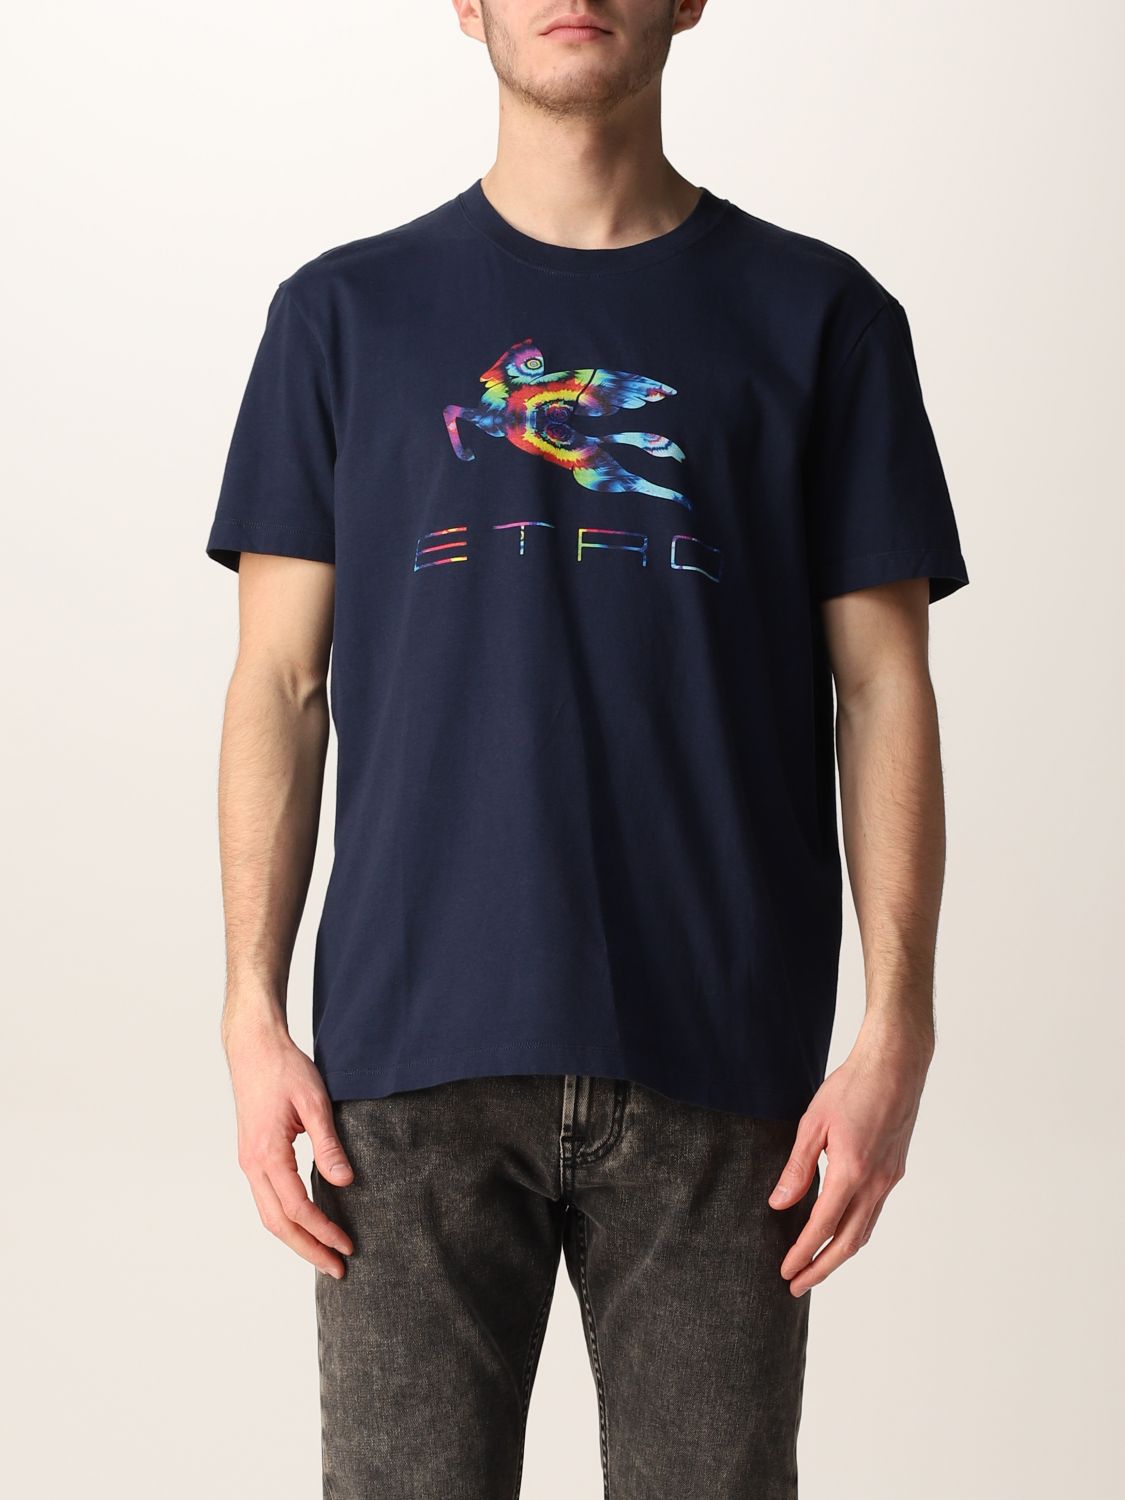 ETRO: cotton t-shirt with tie-dye Pegaso logo - Navy | Etro t-shirt ...